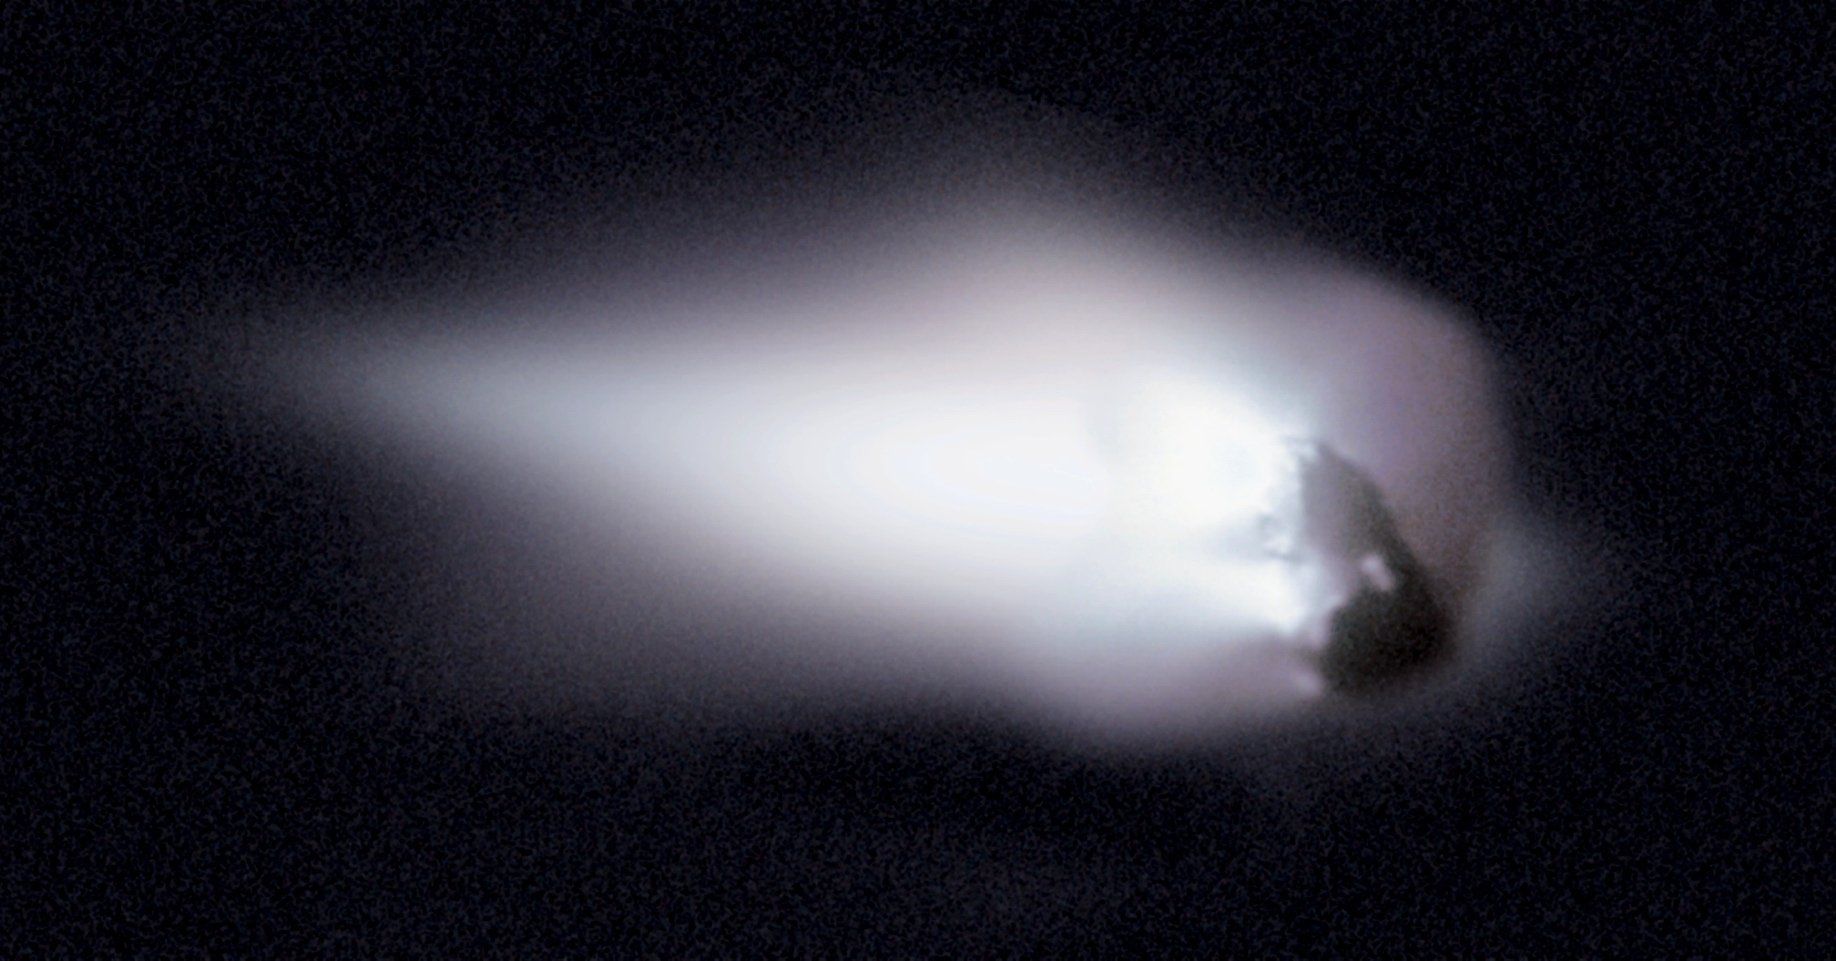 Haleja komētas kodols un koma